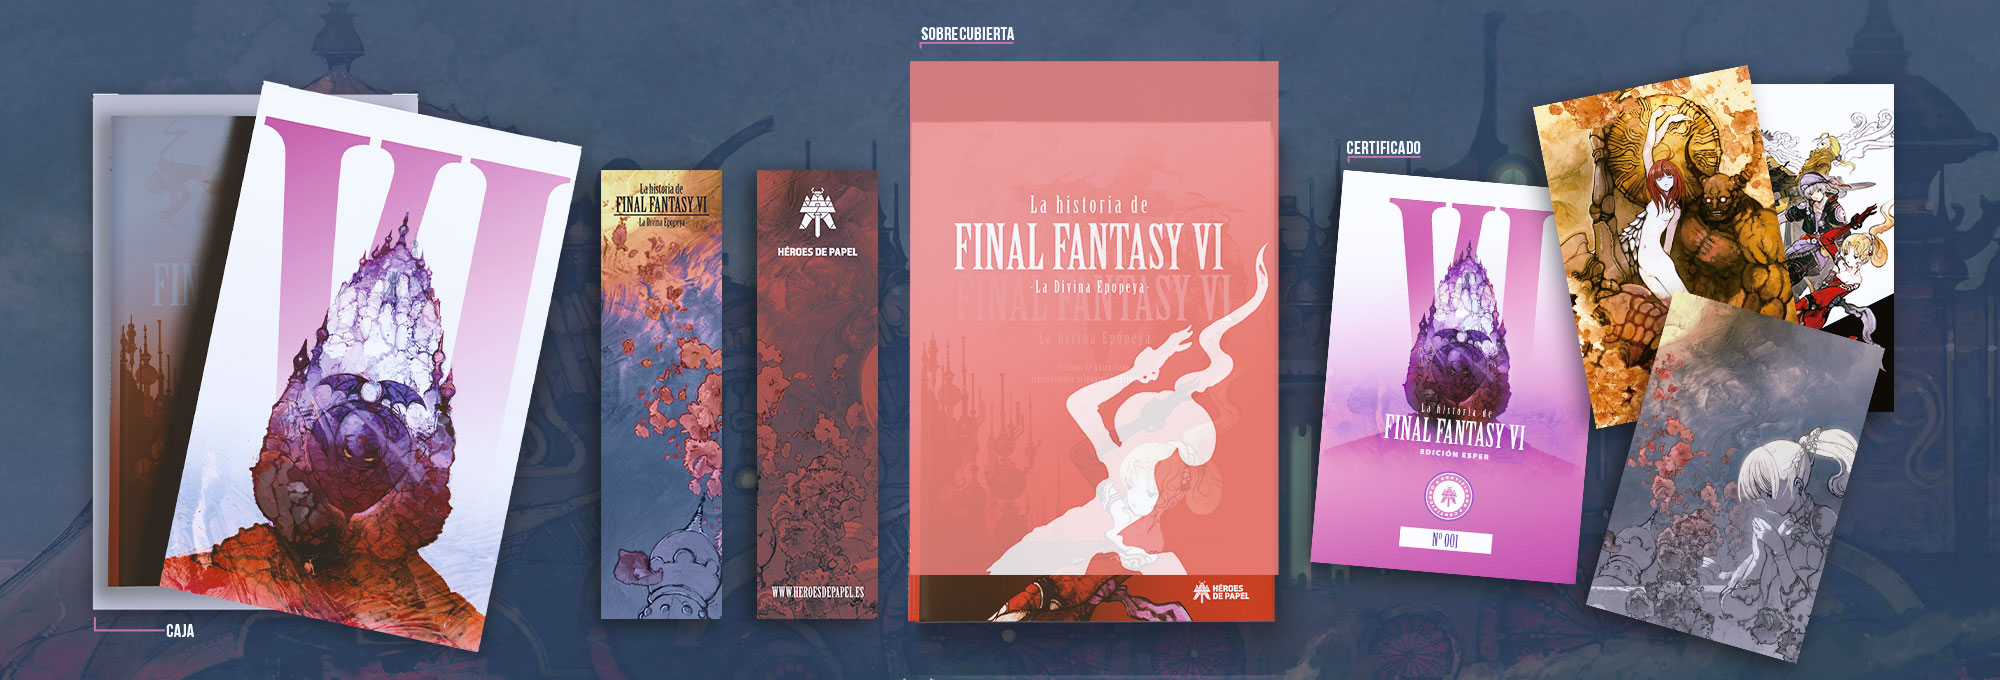 La historia de Final Fantasy VI La Divina Epopeya 